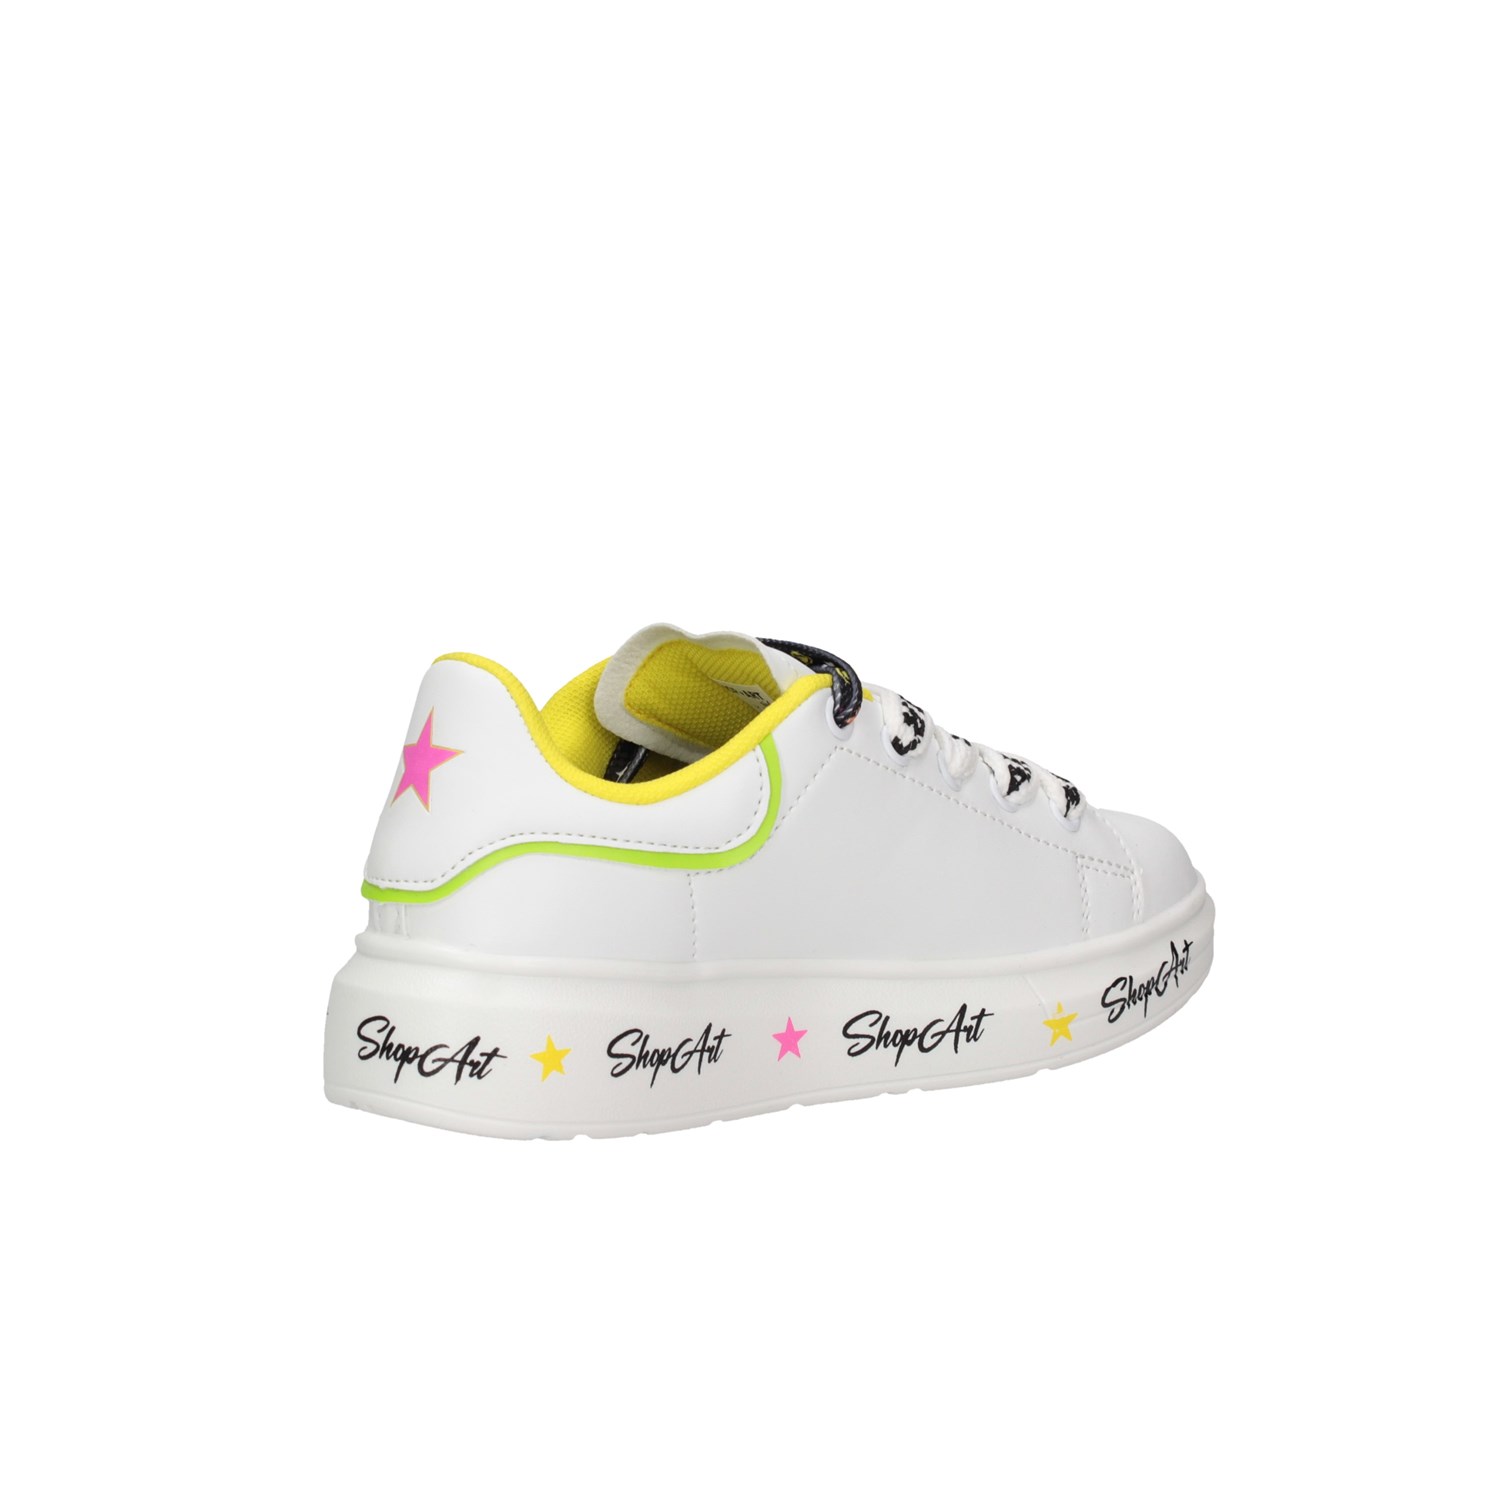 Shop Art SAG80313 White / multicolor Shoes Child 